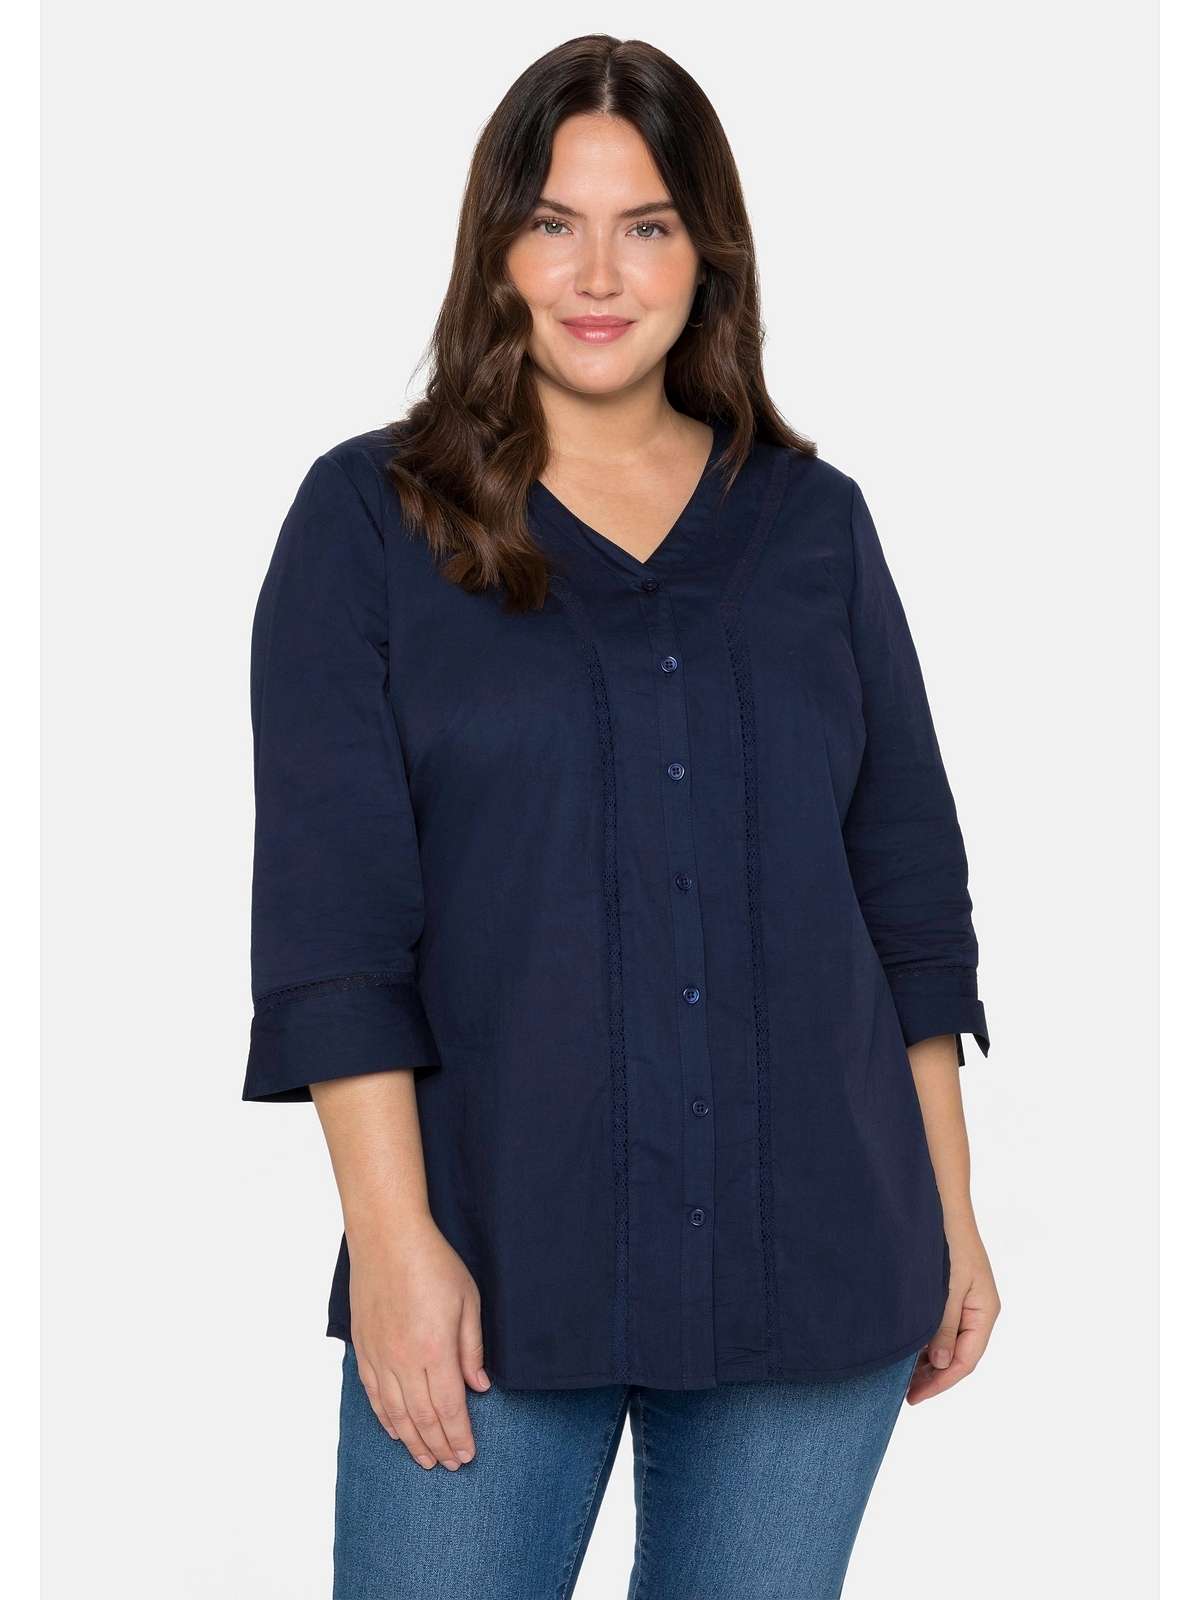 Блузка-рубашка с рукавами 3/4, V-образным вырезом и кружевом